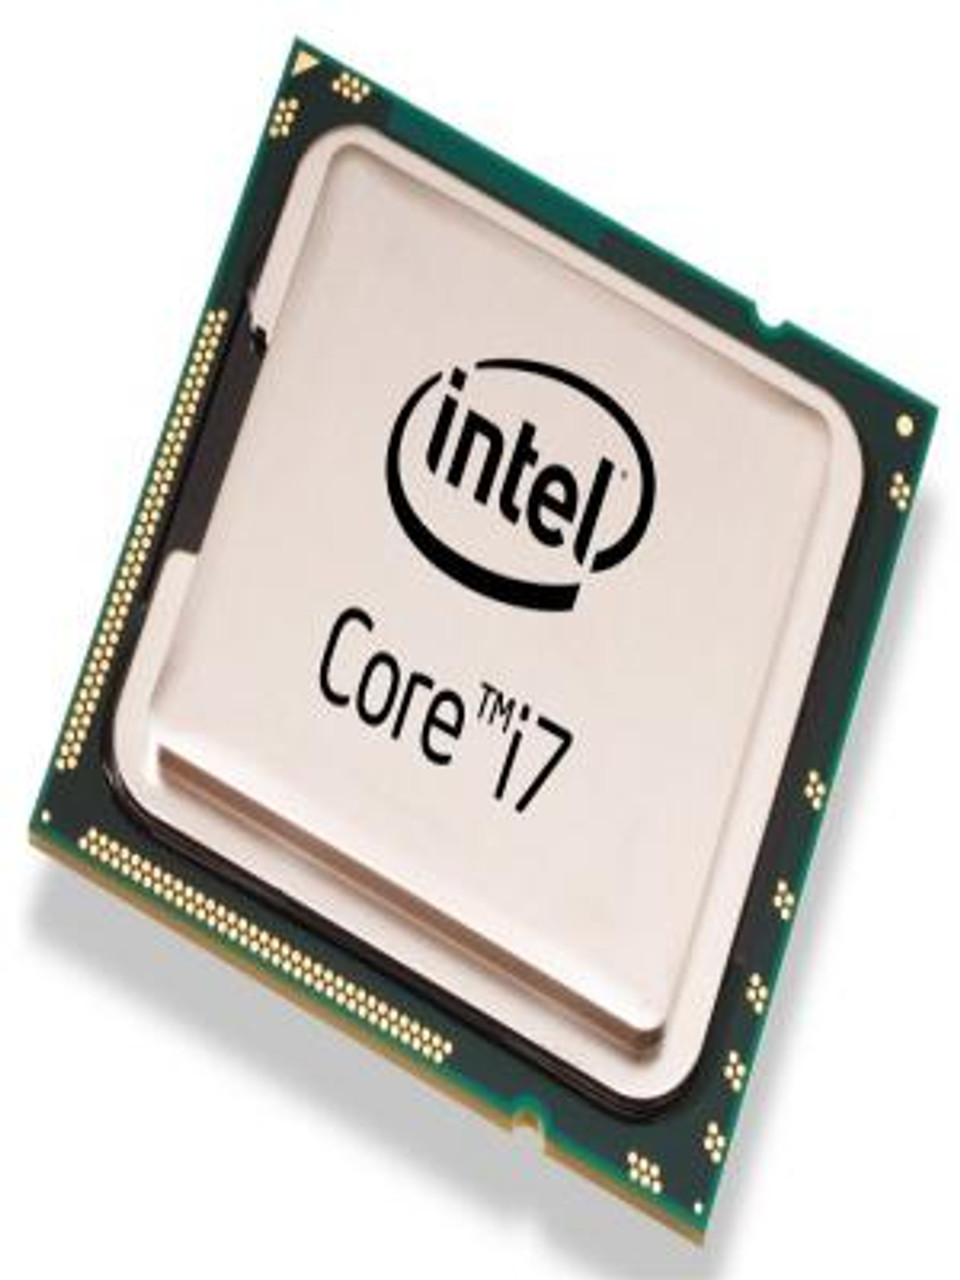 Intel Core i7-860 2.8GHz Desktop OEM CPU SLBJJ BV80605001908AK